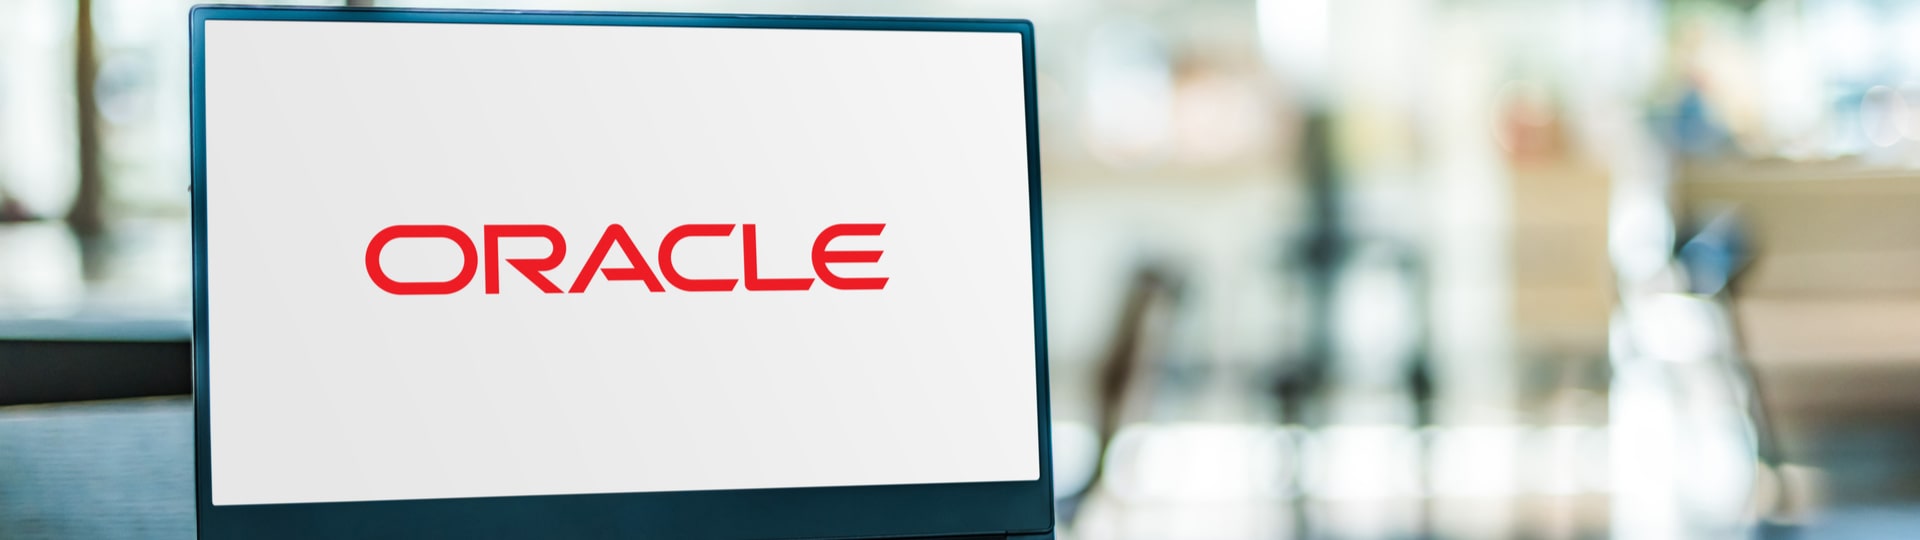 Výrobce firemního softwaru Oracle chce koupit firmu Cerner